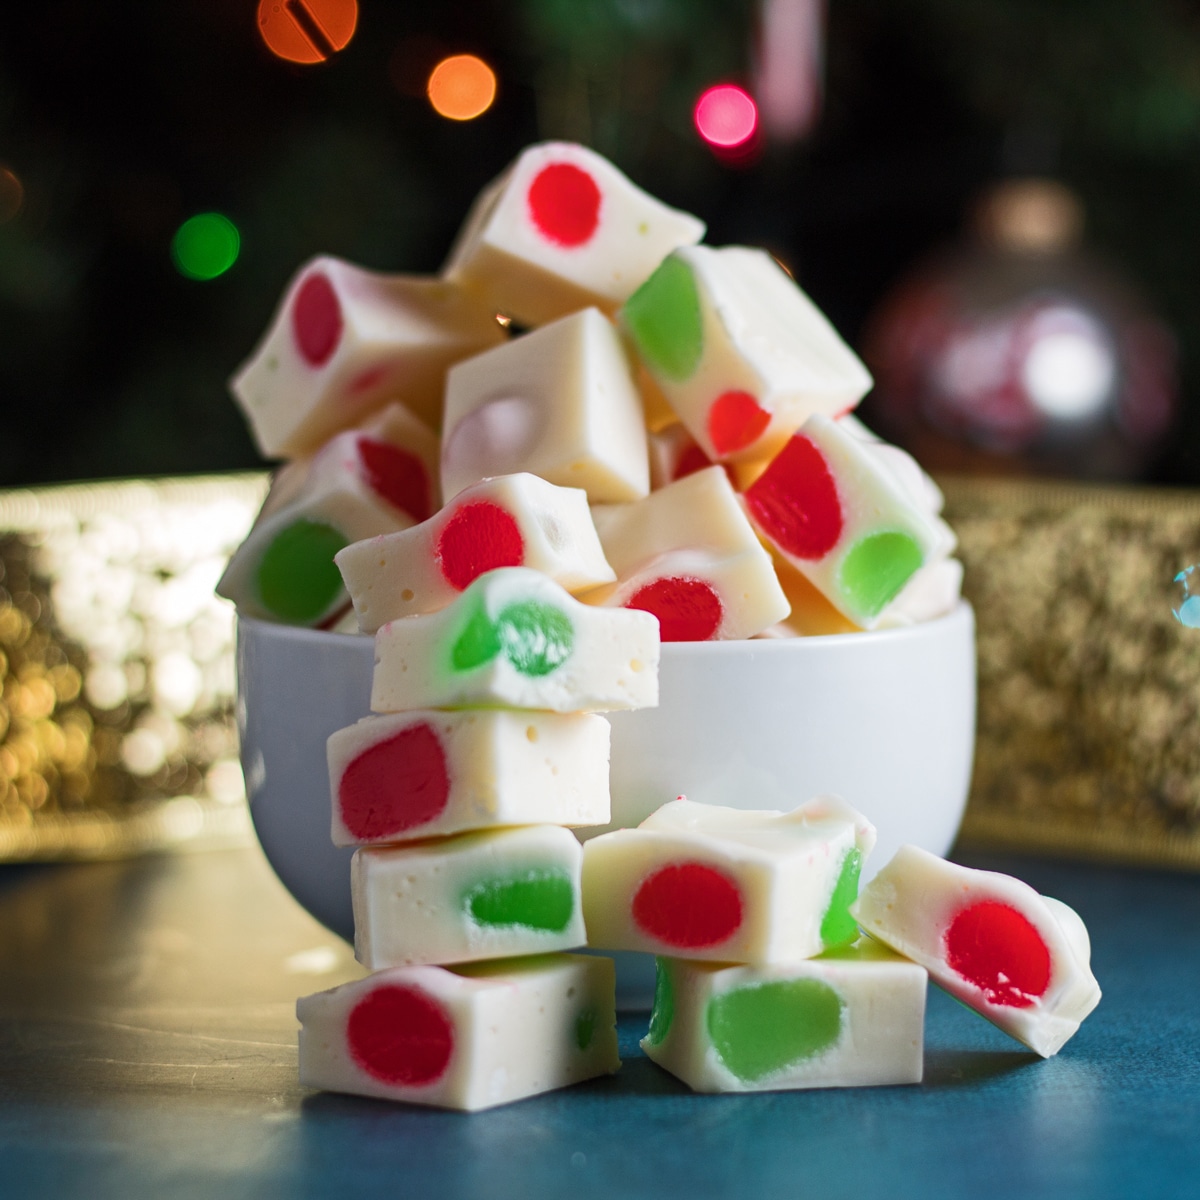 Imagem lateral das peças de doces do Nougat de Natal em uma tigela.